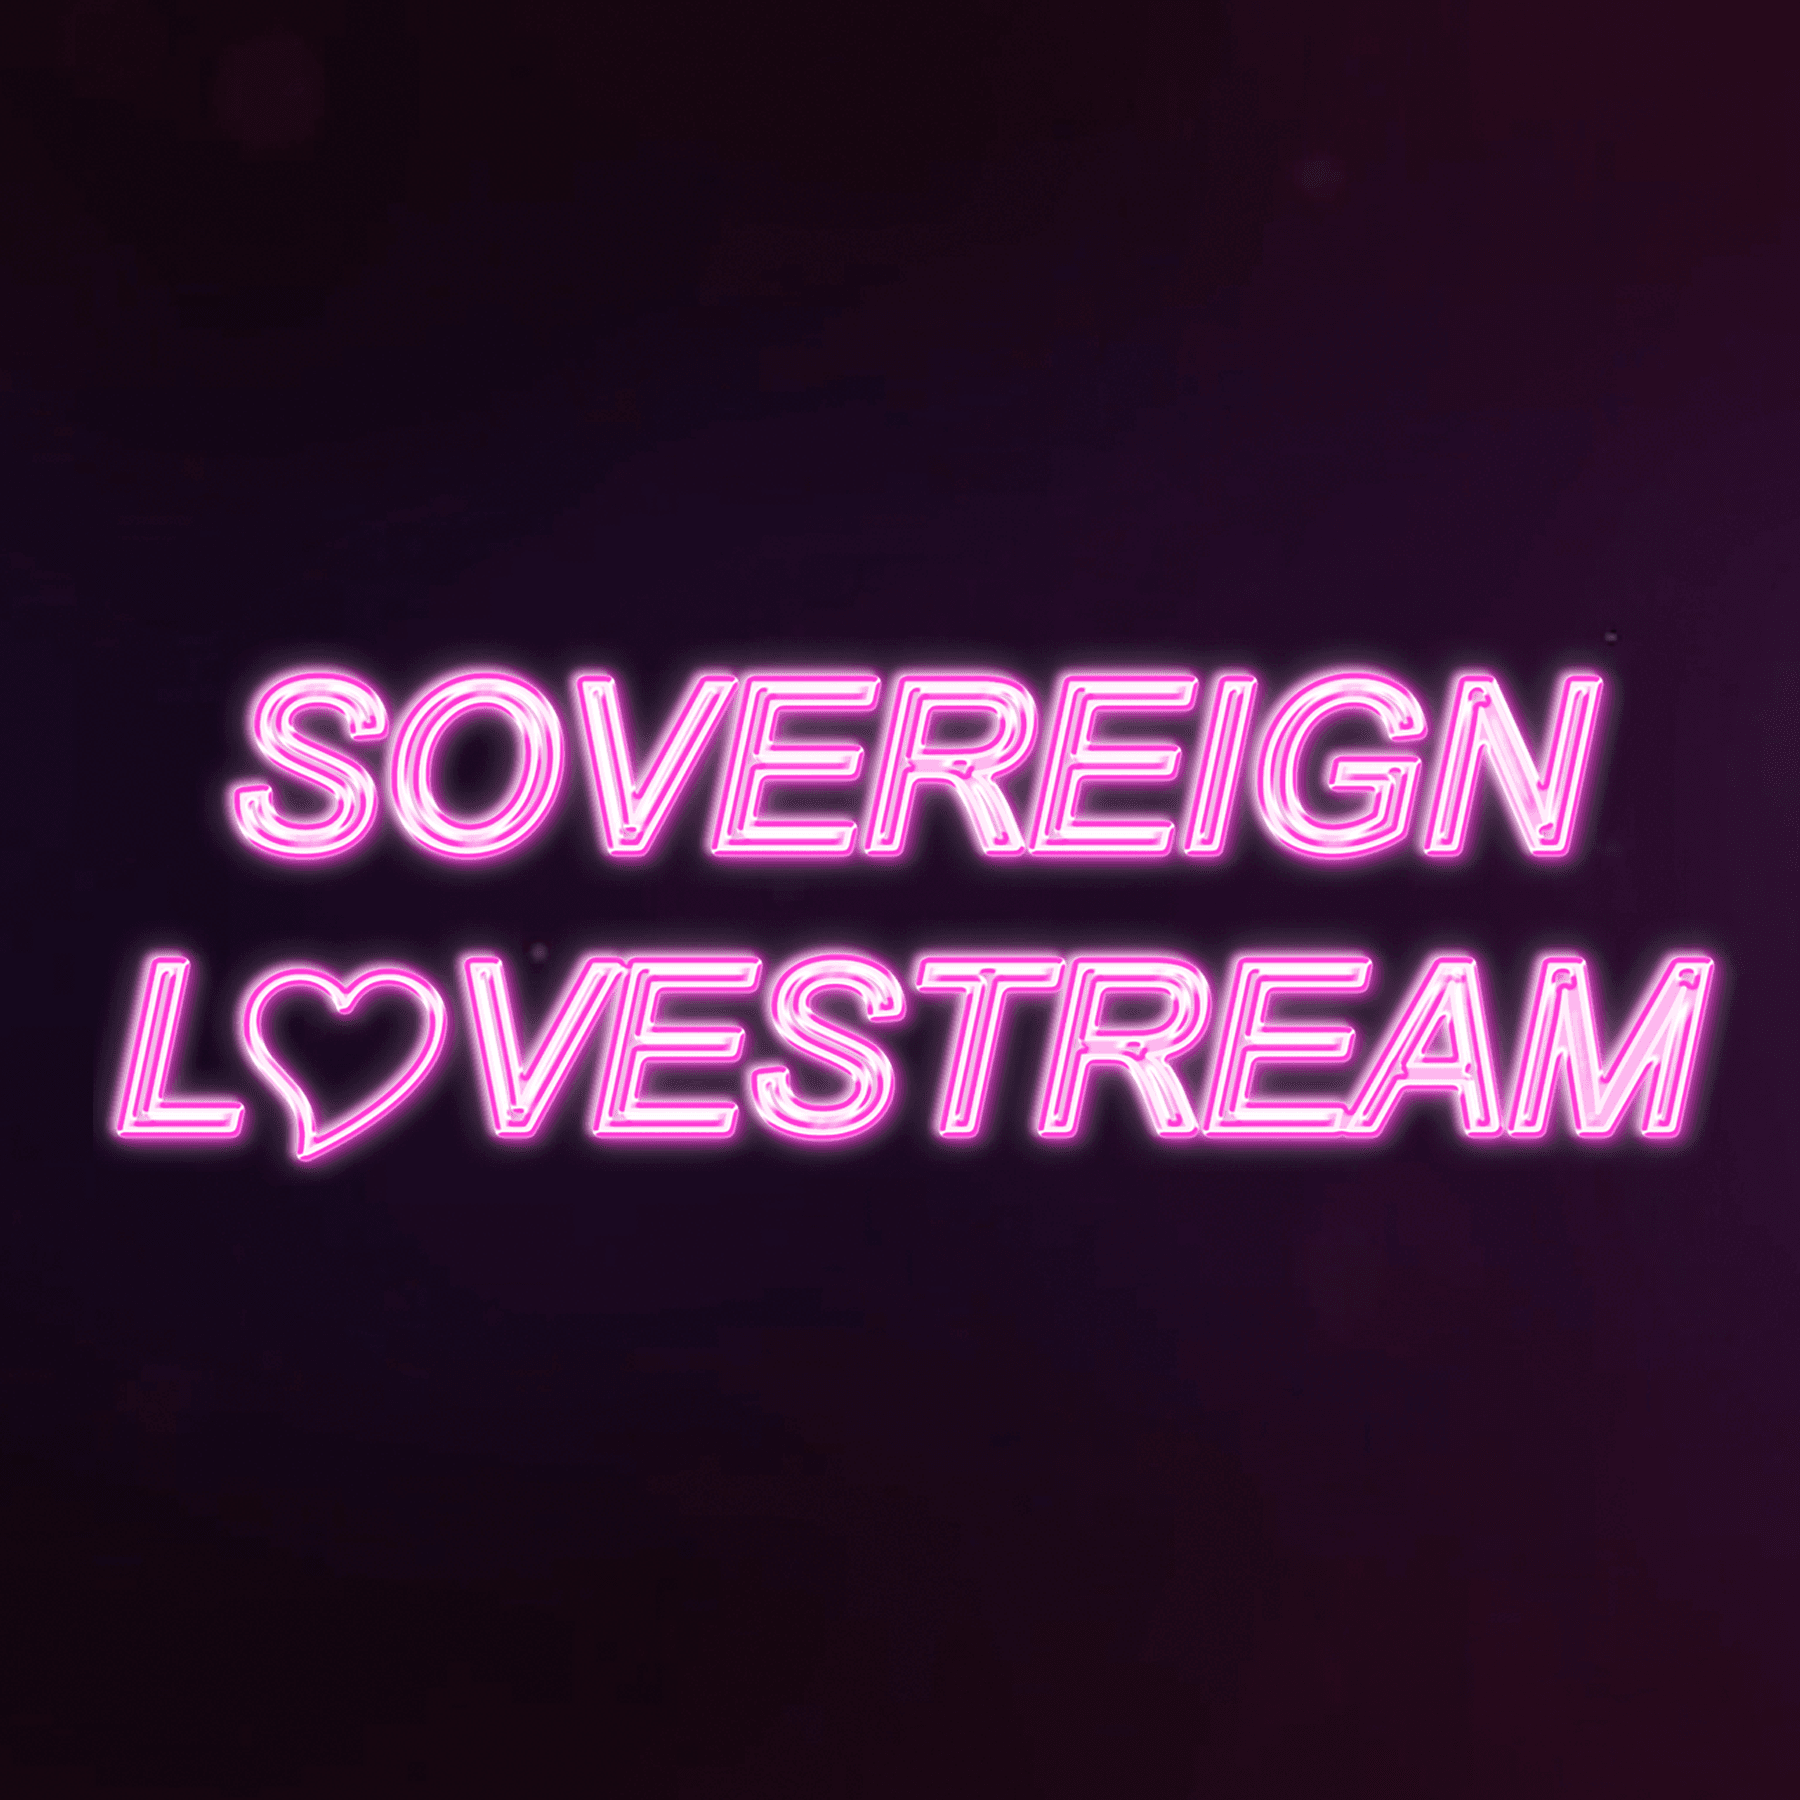 SovereignLovestream